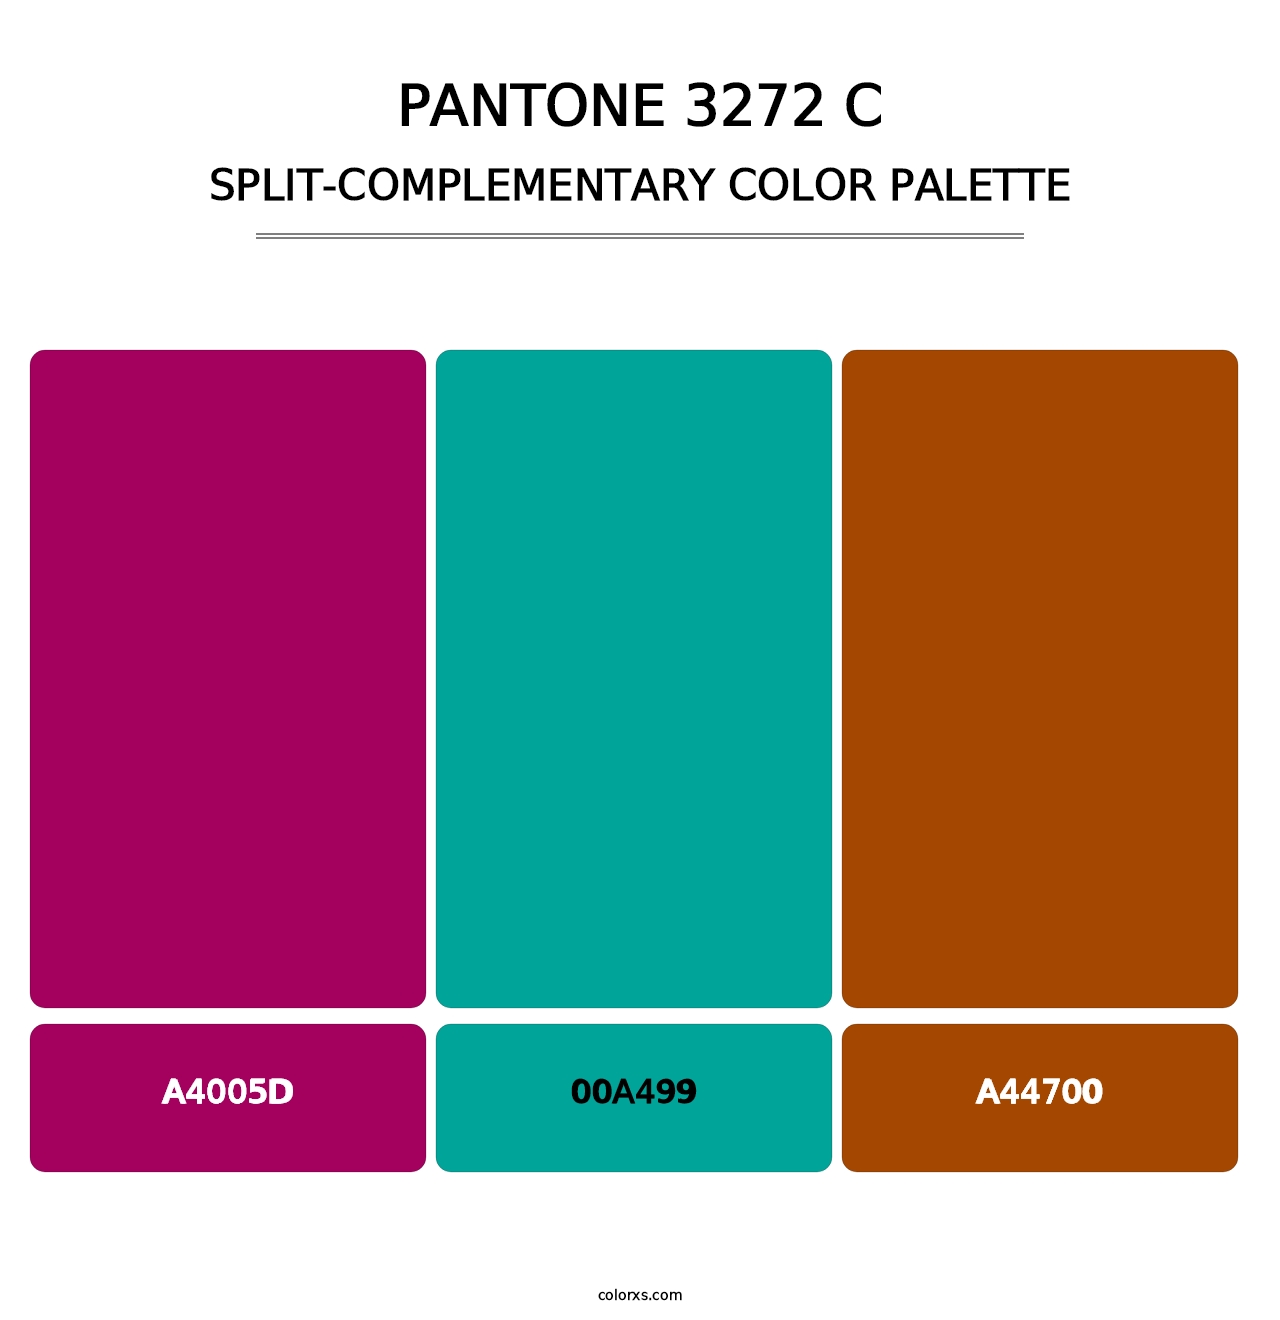 PANTONE 3272 C - Split-Complementary Color Palette